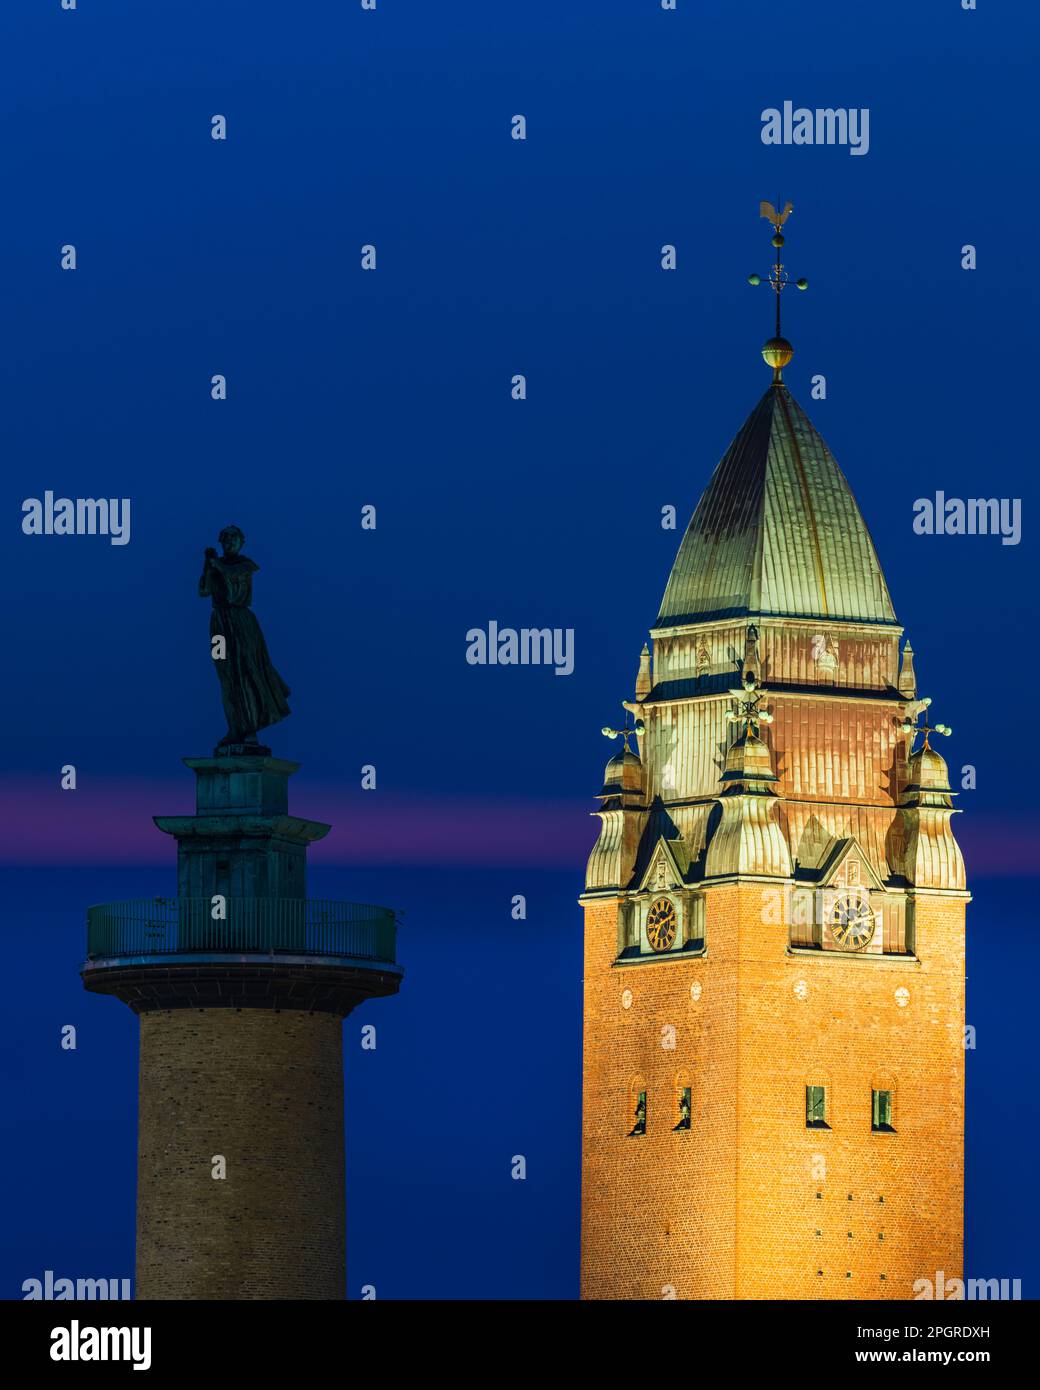 Der majestätische Turm einer alten Kirche ragt am Nachthimmel zusammen mit einer Statue auf dem Turm. Stockfoto